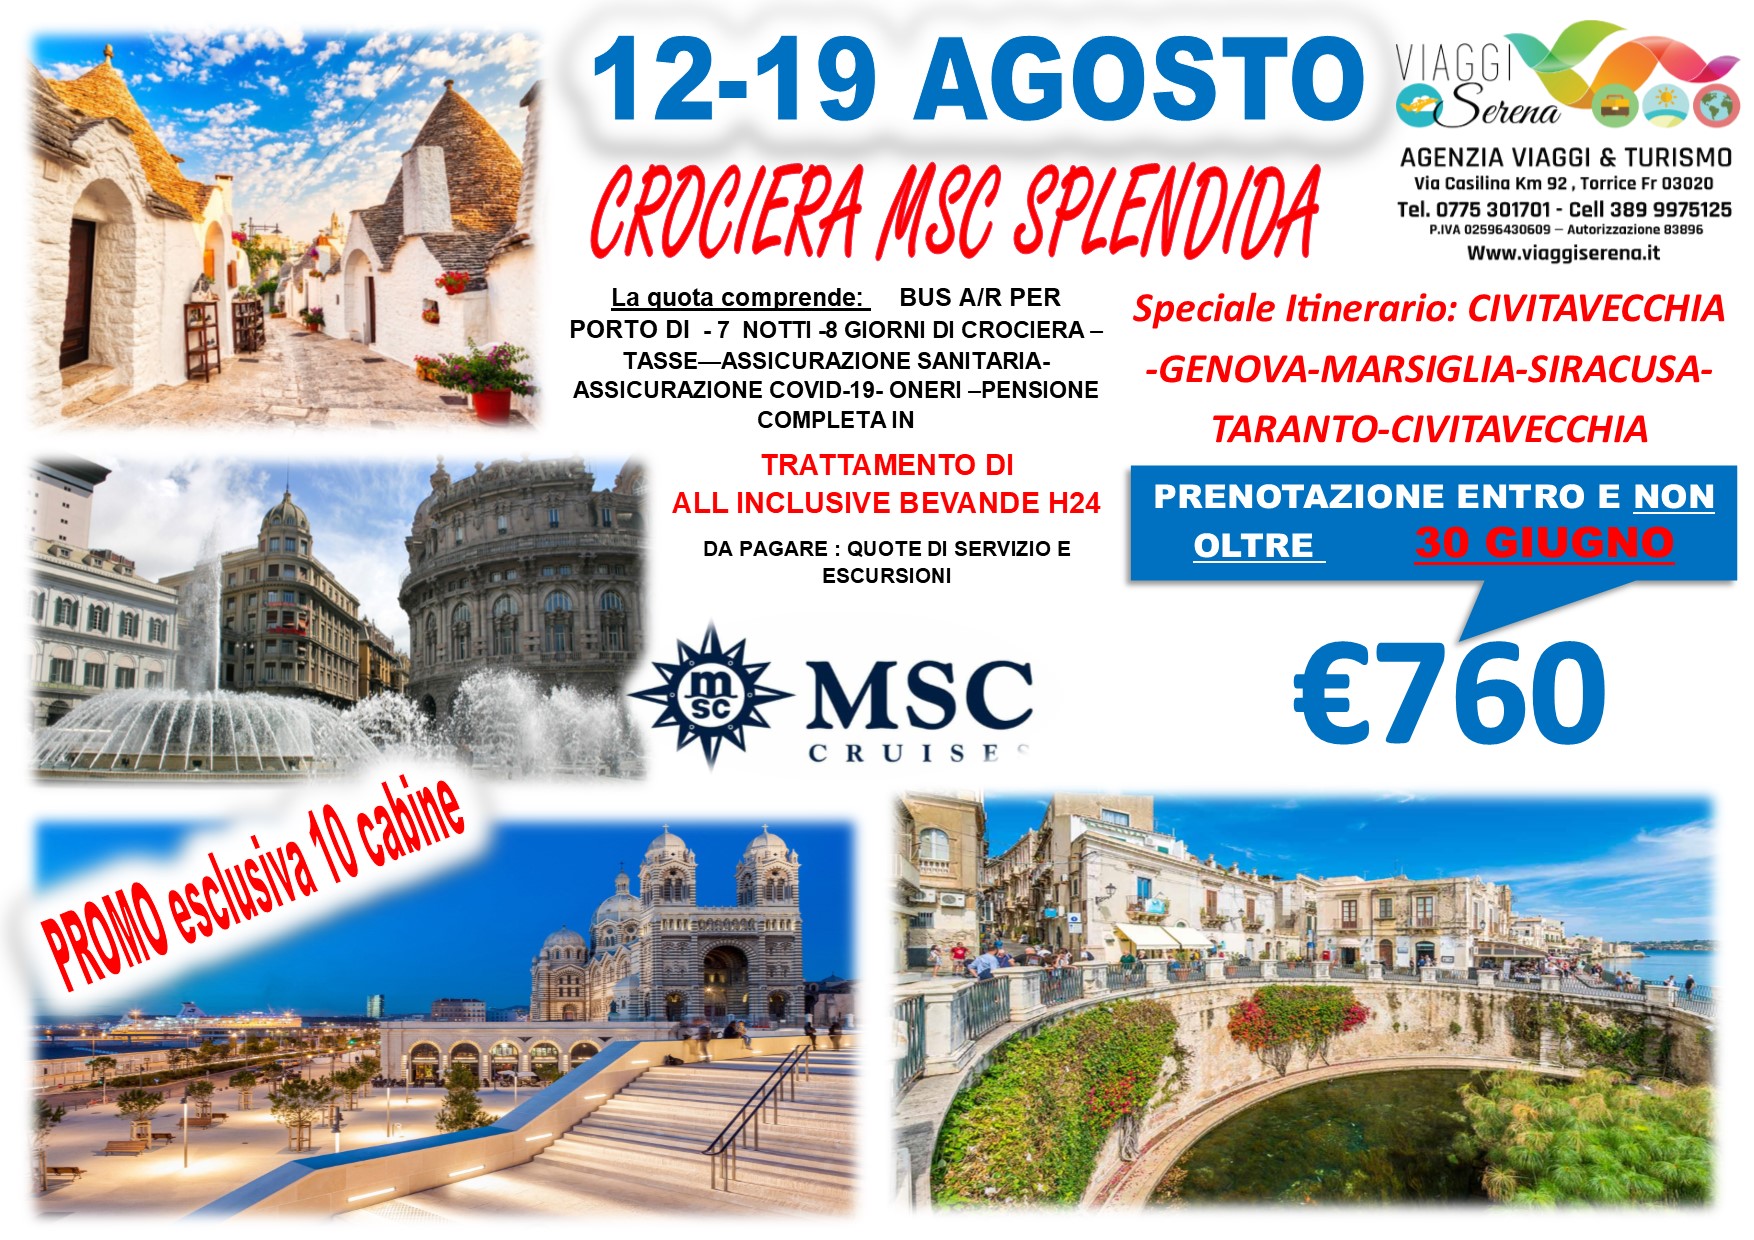 Viaggi di Gruppo: Ferragosto CROCIERA “MSC  SPLENDIDA” promo ALL INCLUSIVE 12-19 Agosto €760,00